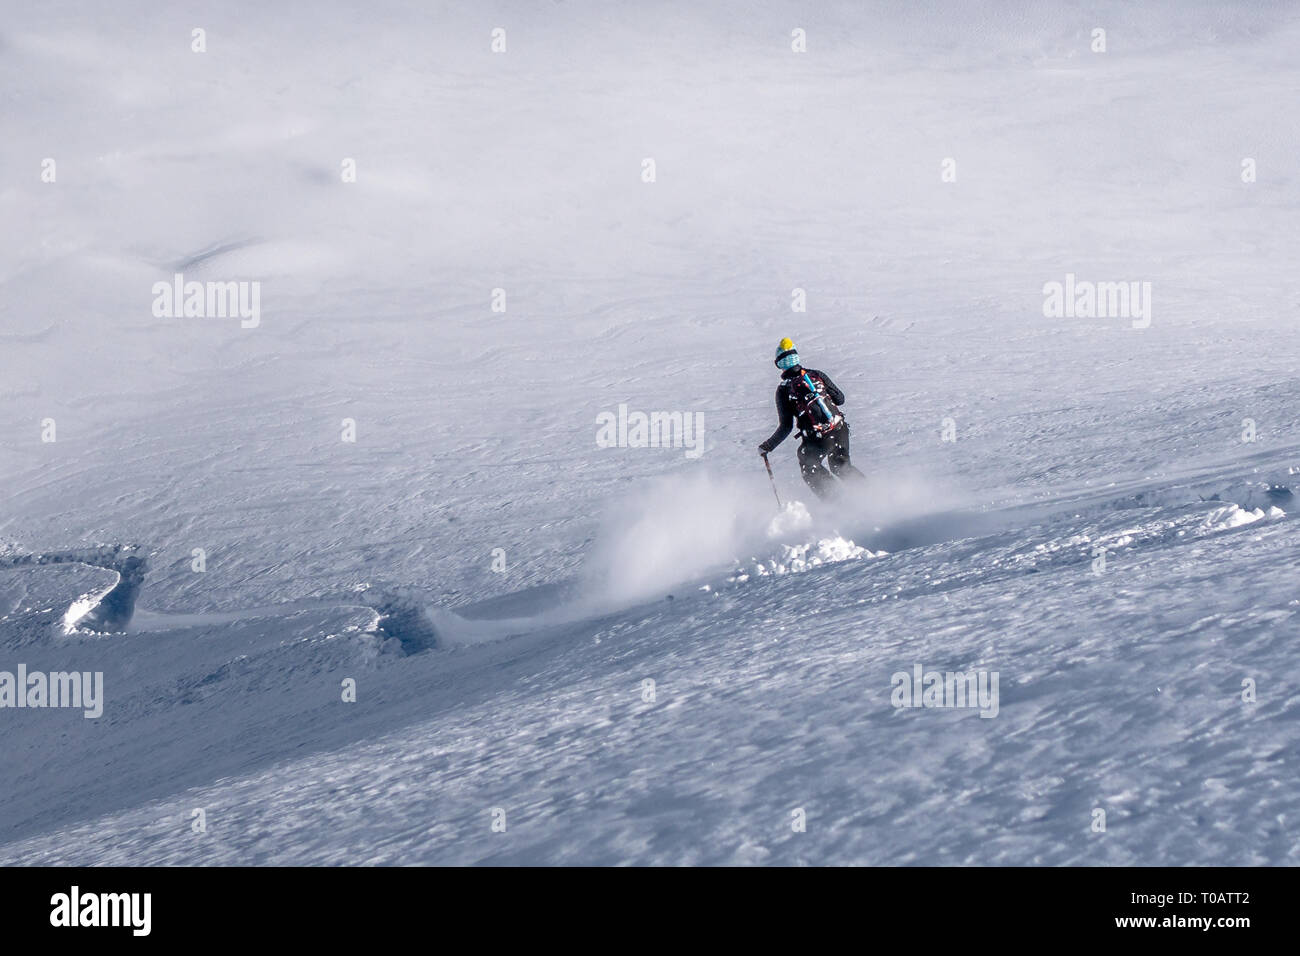 Chamonix, Francia - 5 de febrero de 2019: un esquiador freeride femenina desciende por una pendiente con nieve en polvo fresca en el Vallon de Berard en las Aiguilles Rouges Foto de stock